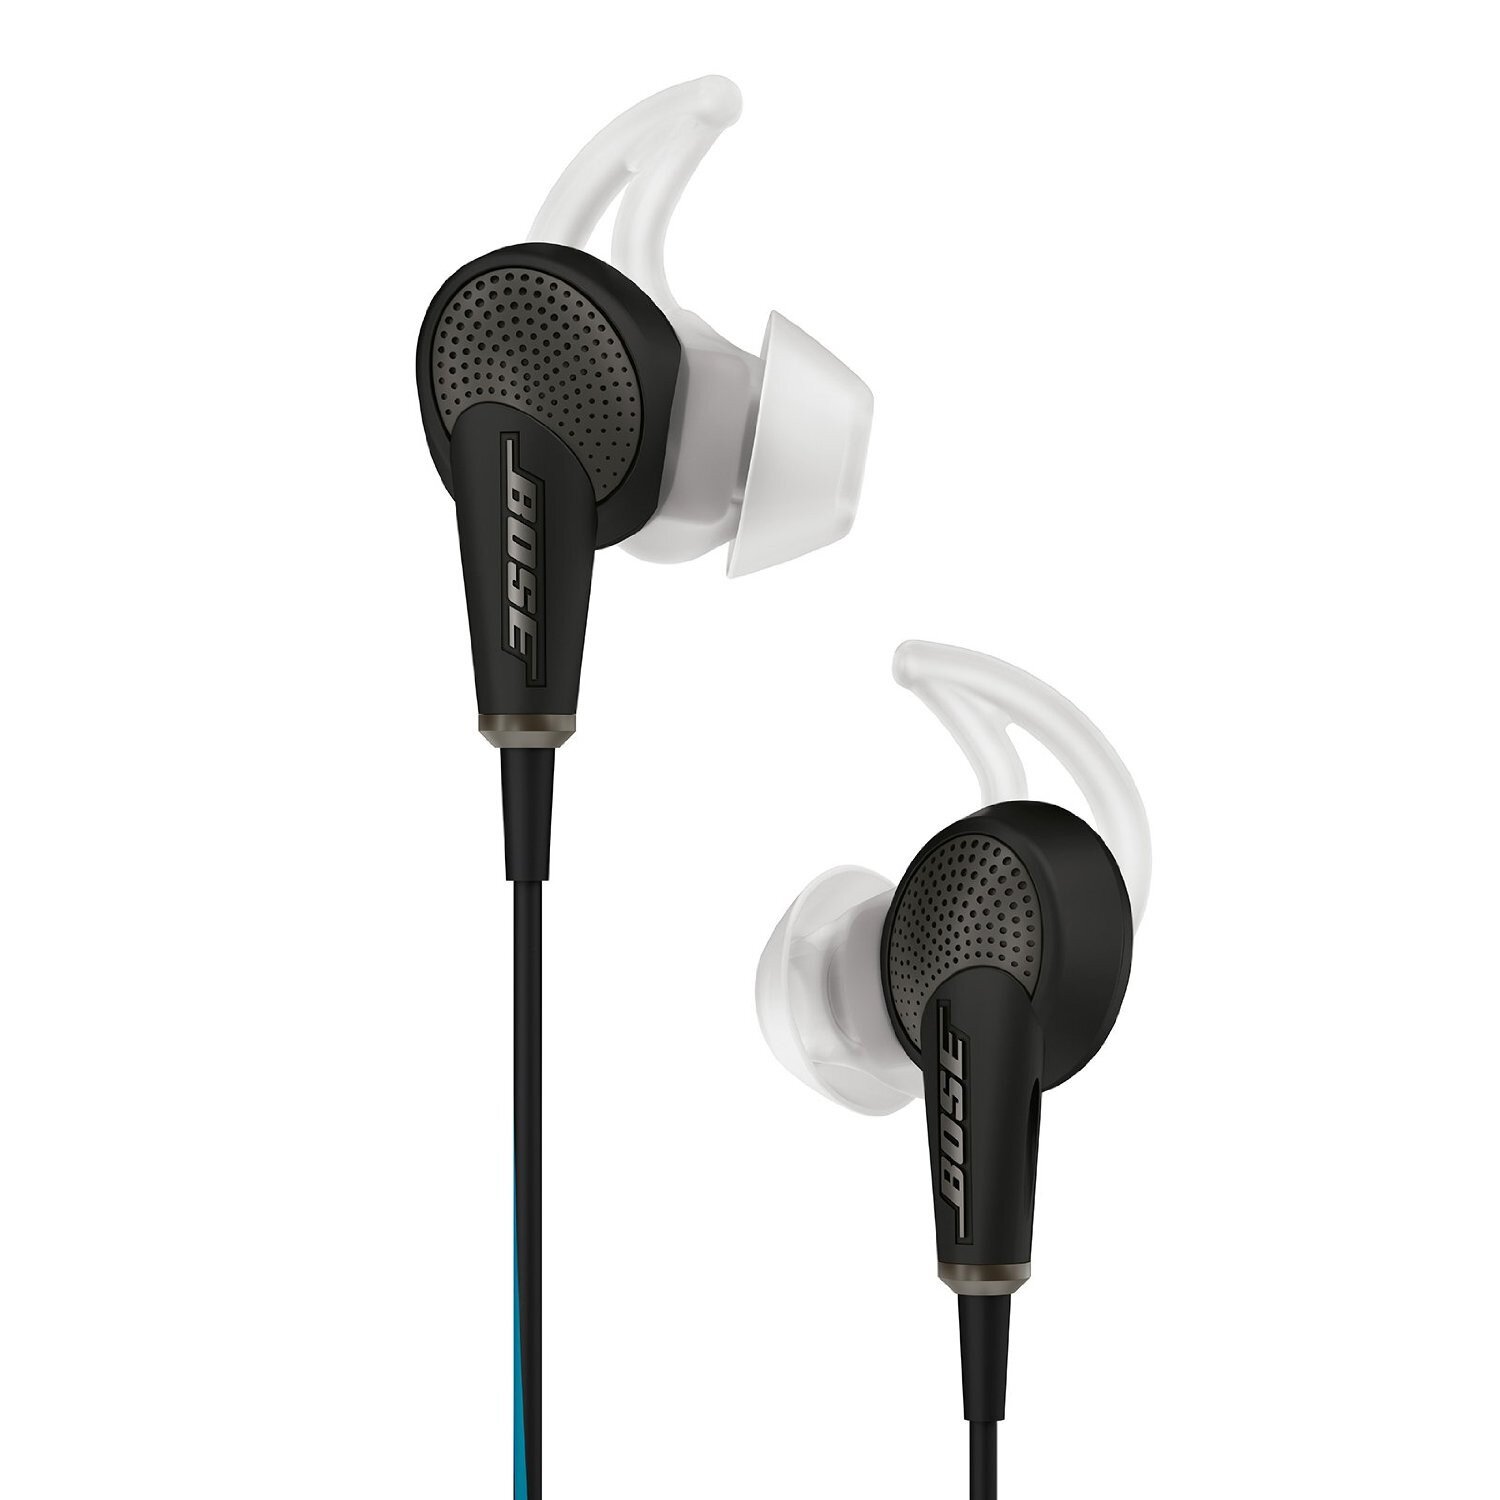 Bose quiet comfort 20 earbuds